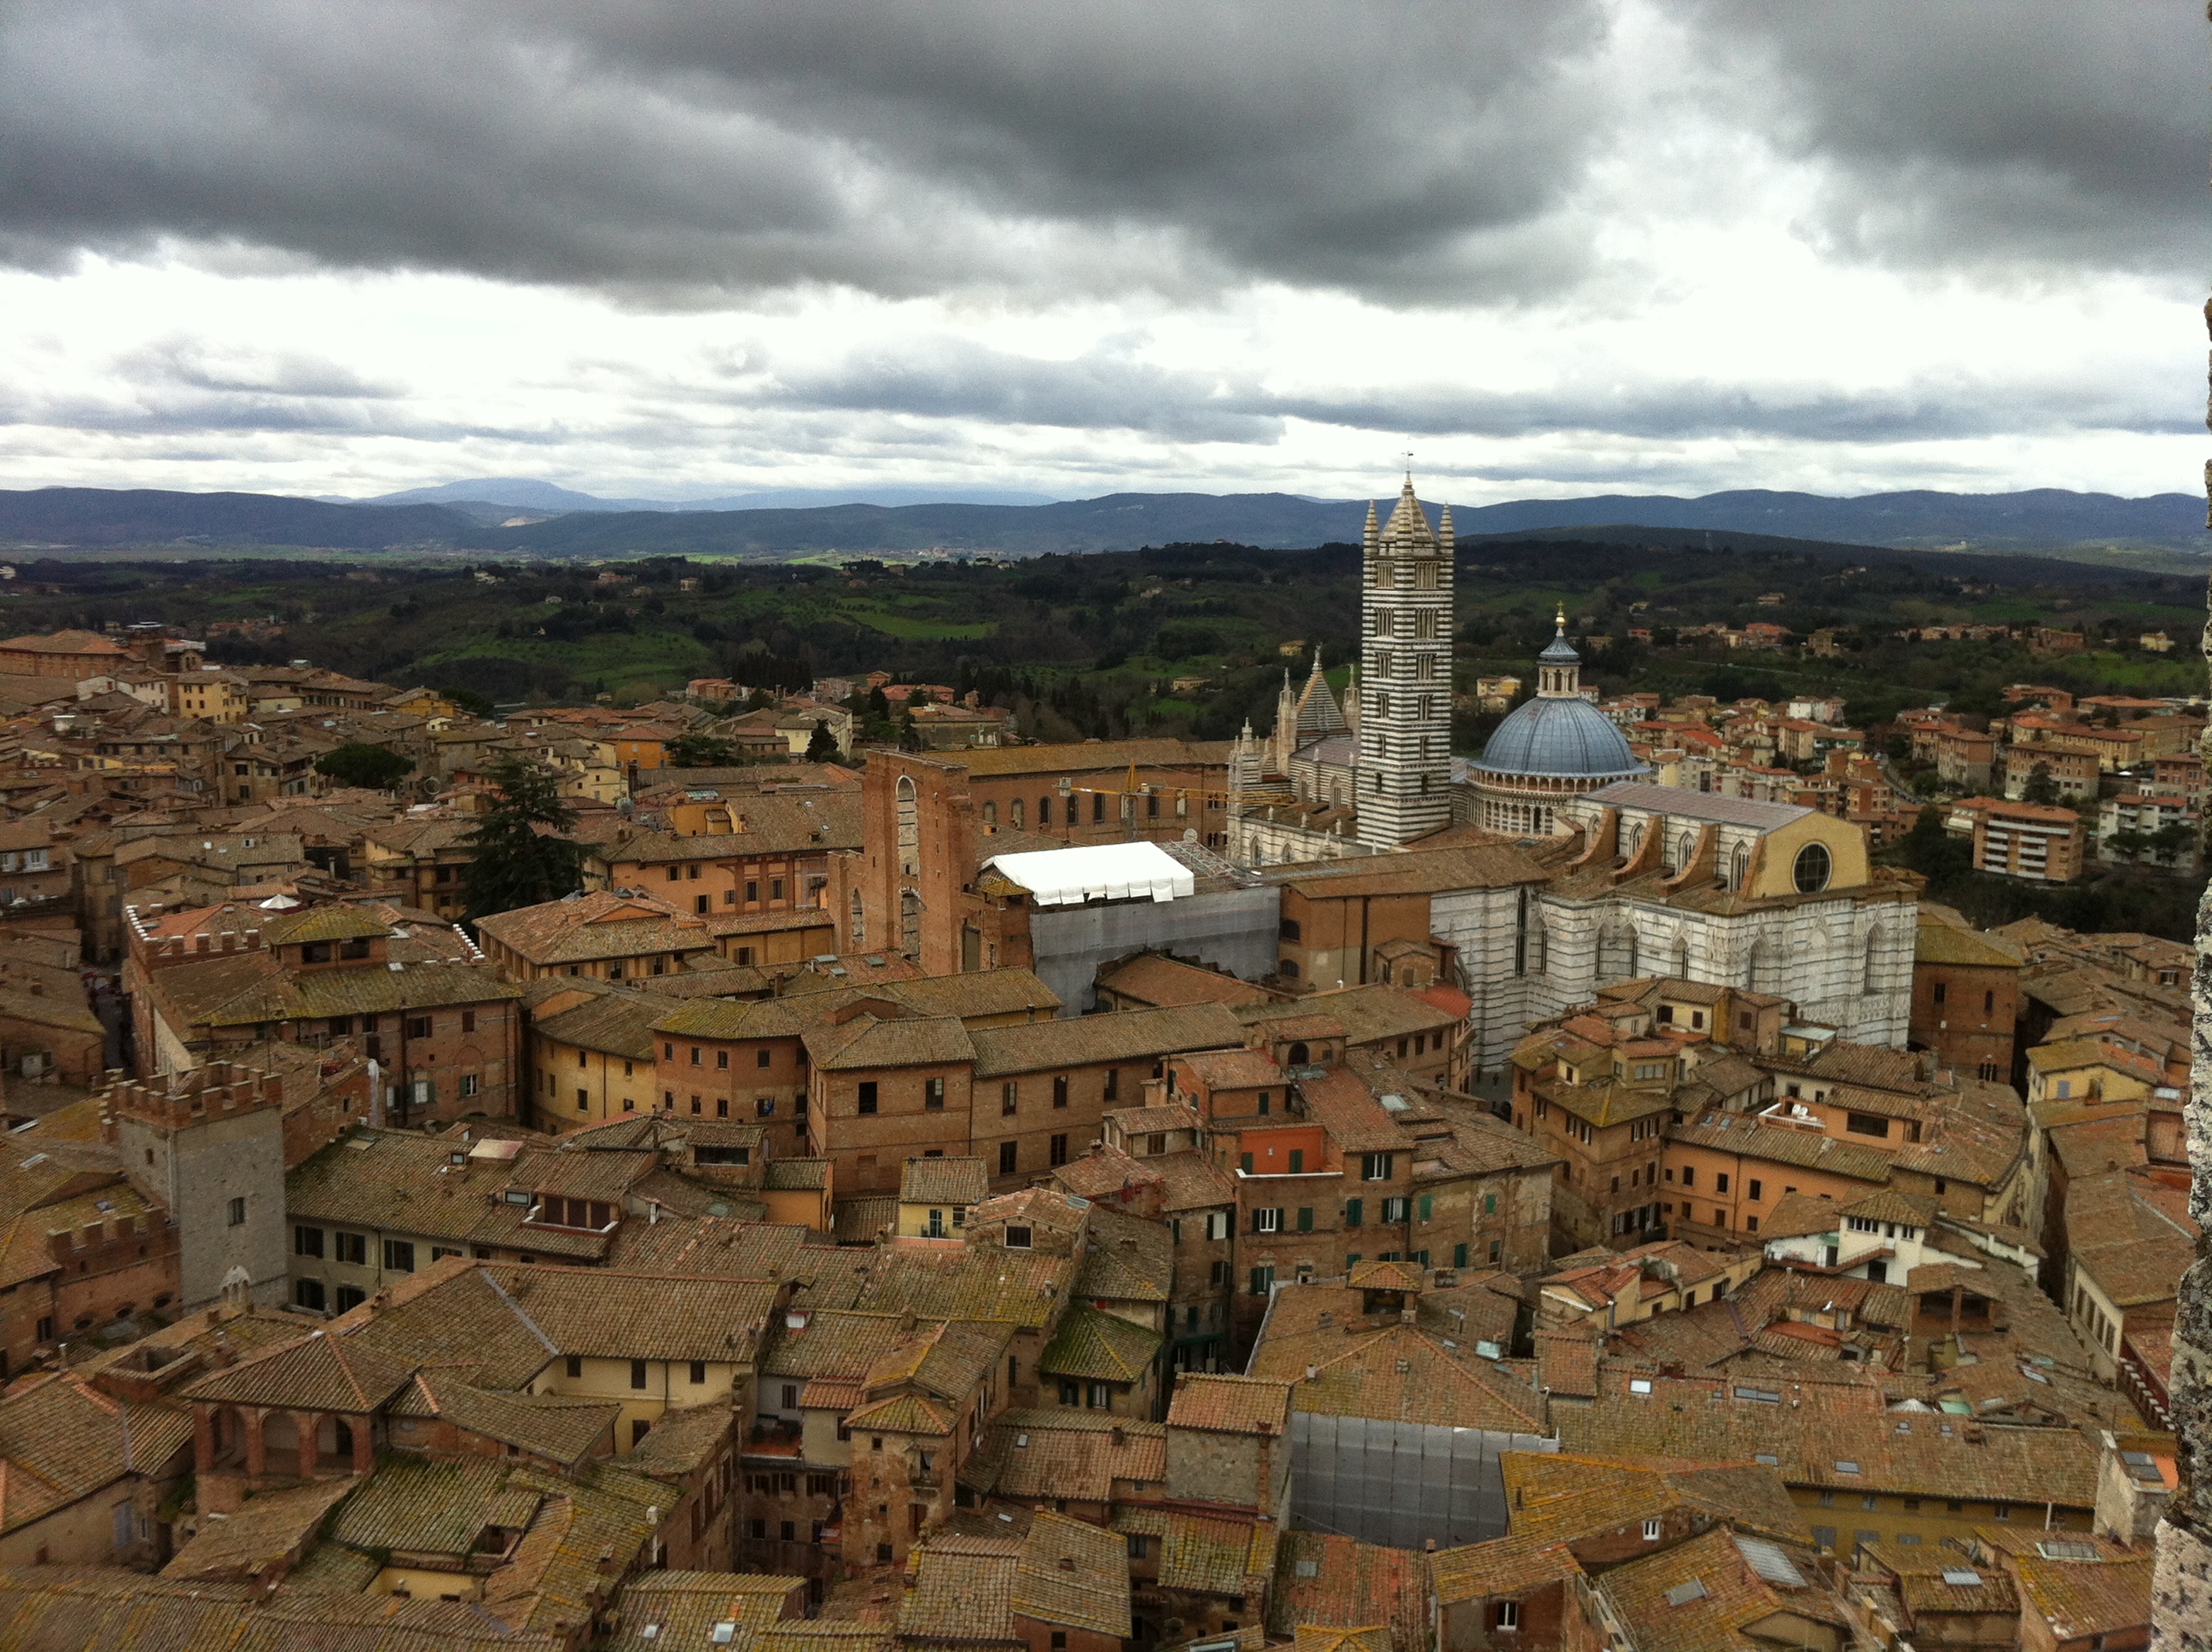 Idee per una vacanza: 4 giorni in provincia di Siena (parte I)